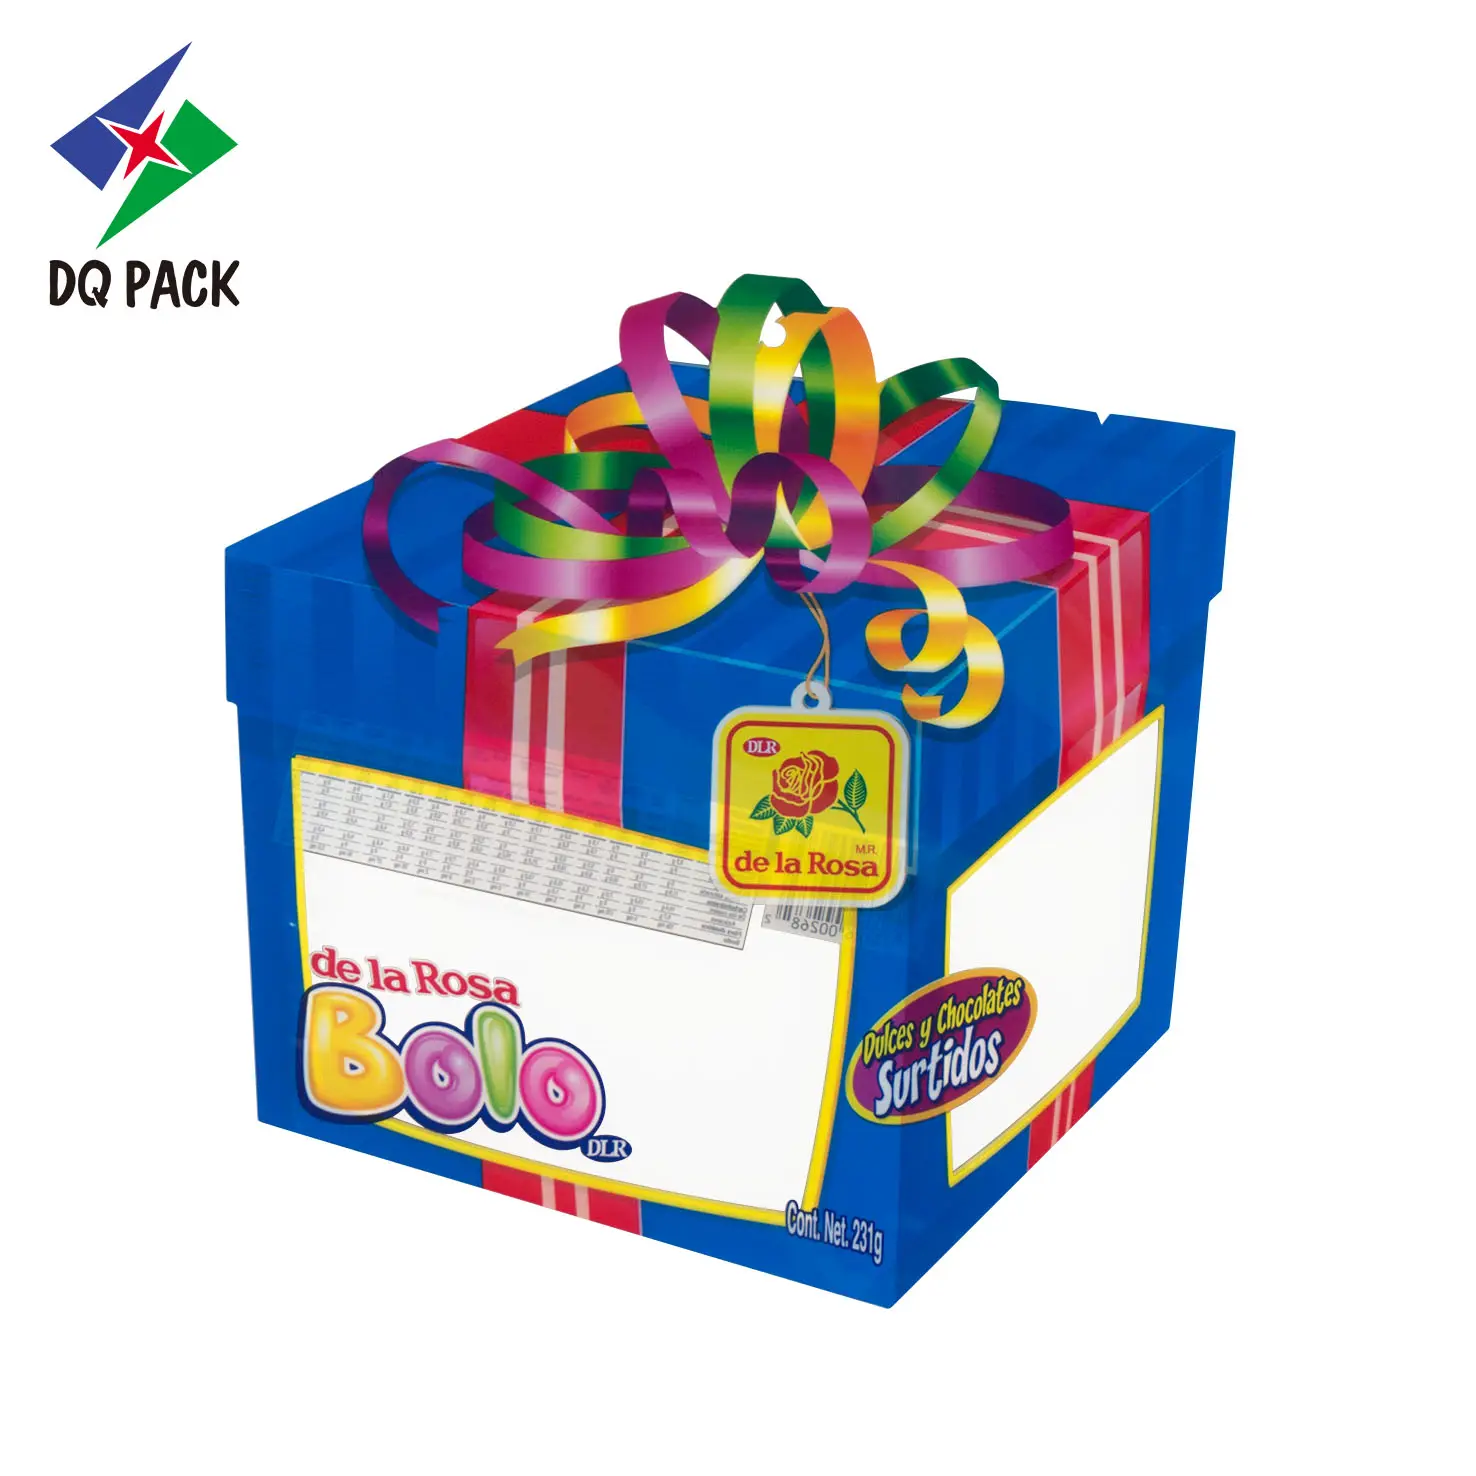 Bolsa con forma de regalo de Navidad, bolsita de azúcar de caramelo, embalaje de aperitivos personalizado